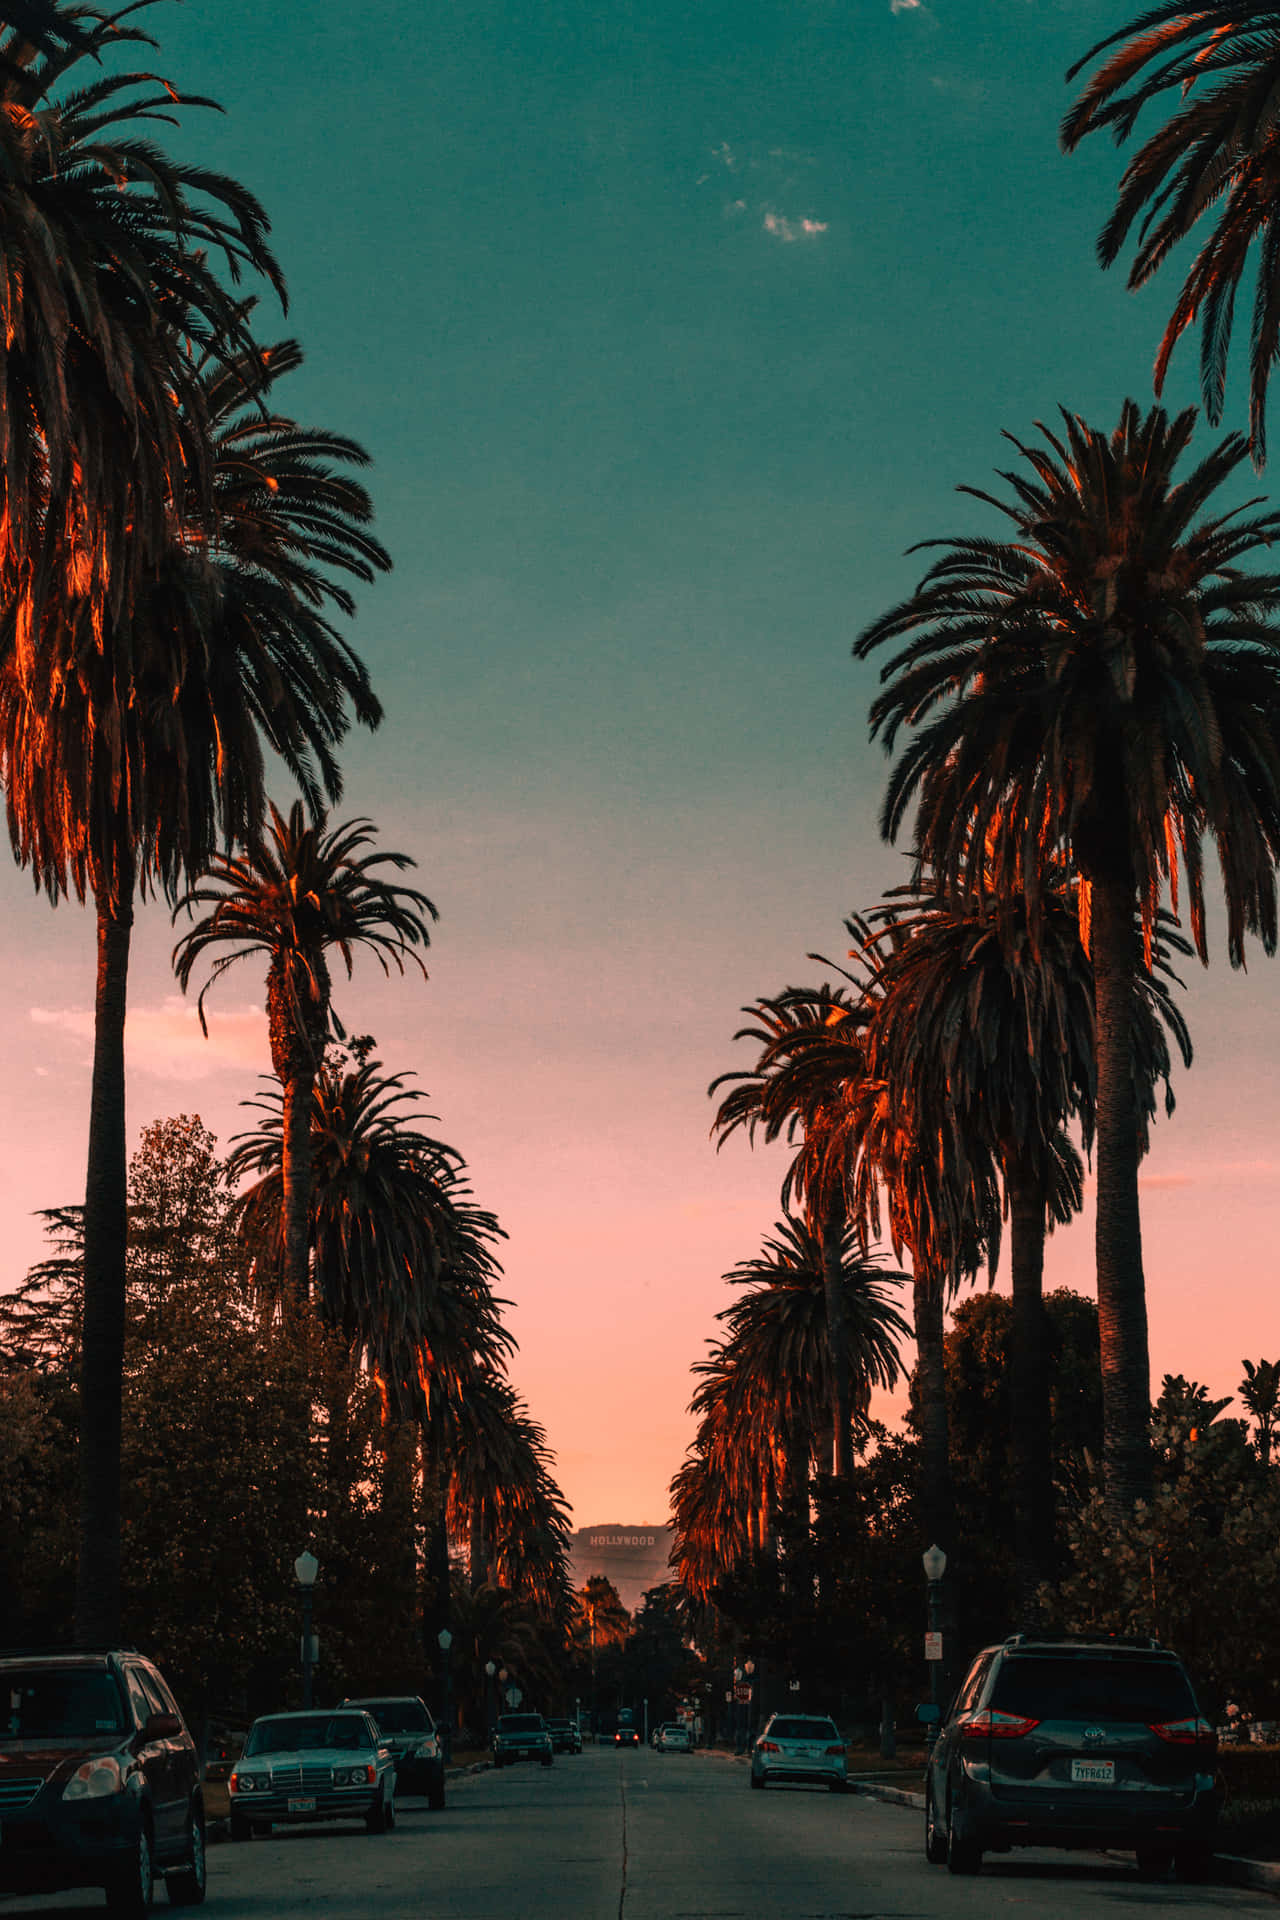 Taen Paus Från Verkligheten Och Utforska Kaliforniens Sommarskönhet På Ditt Datorskärms- Eller Mobilskärmsbakgrund. Wallpaper